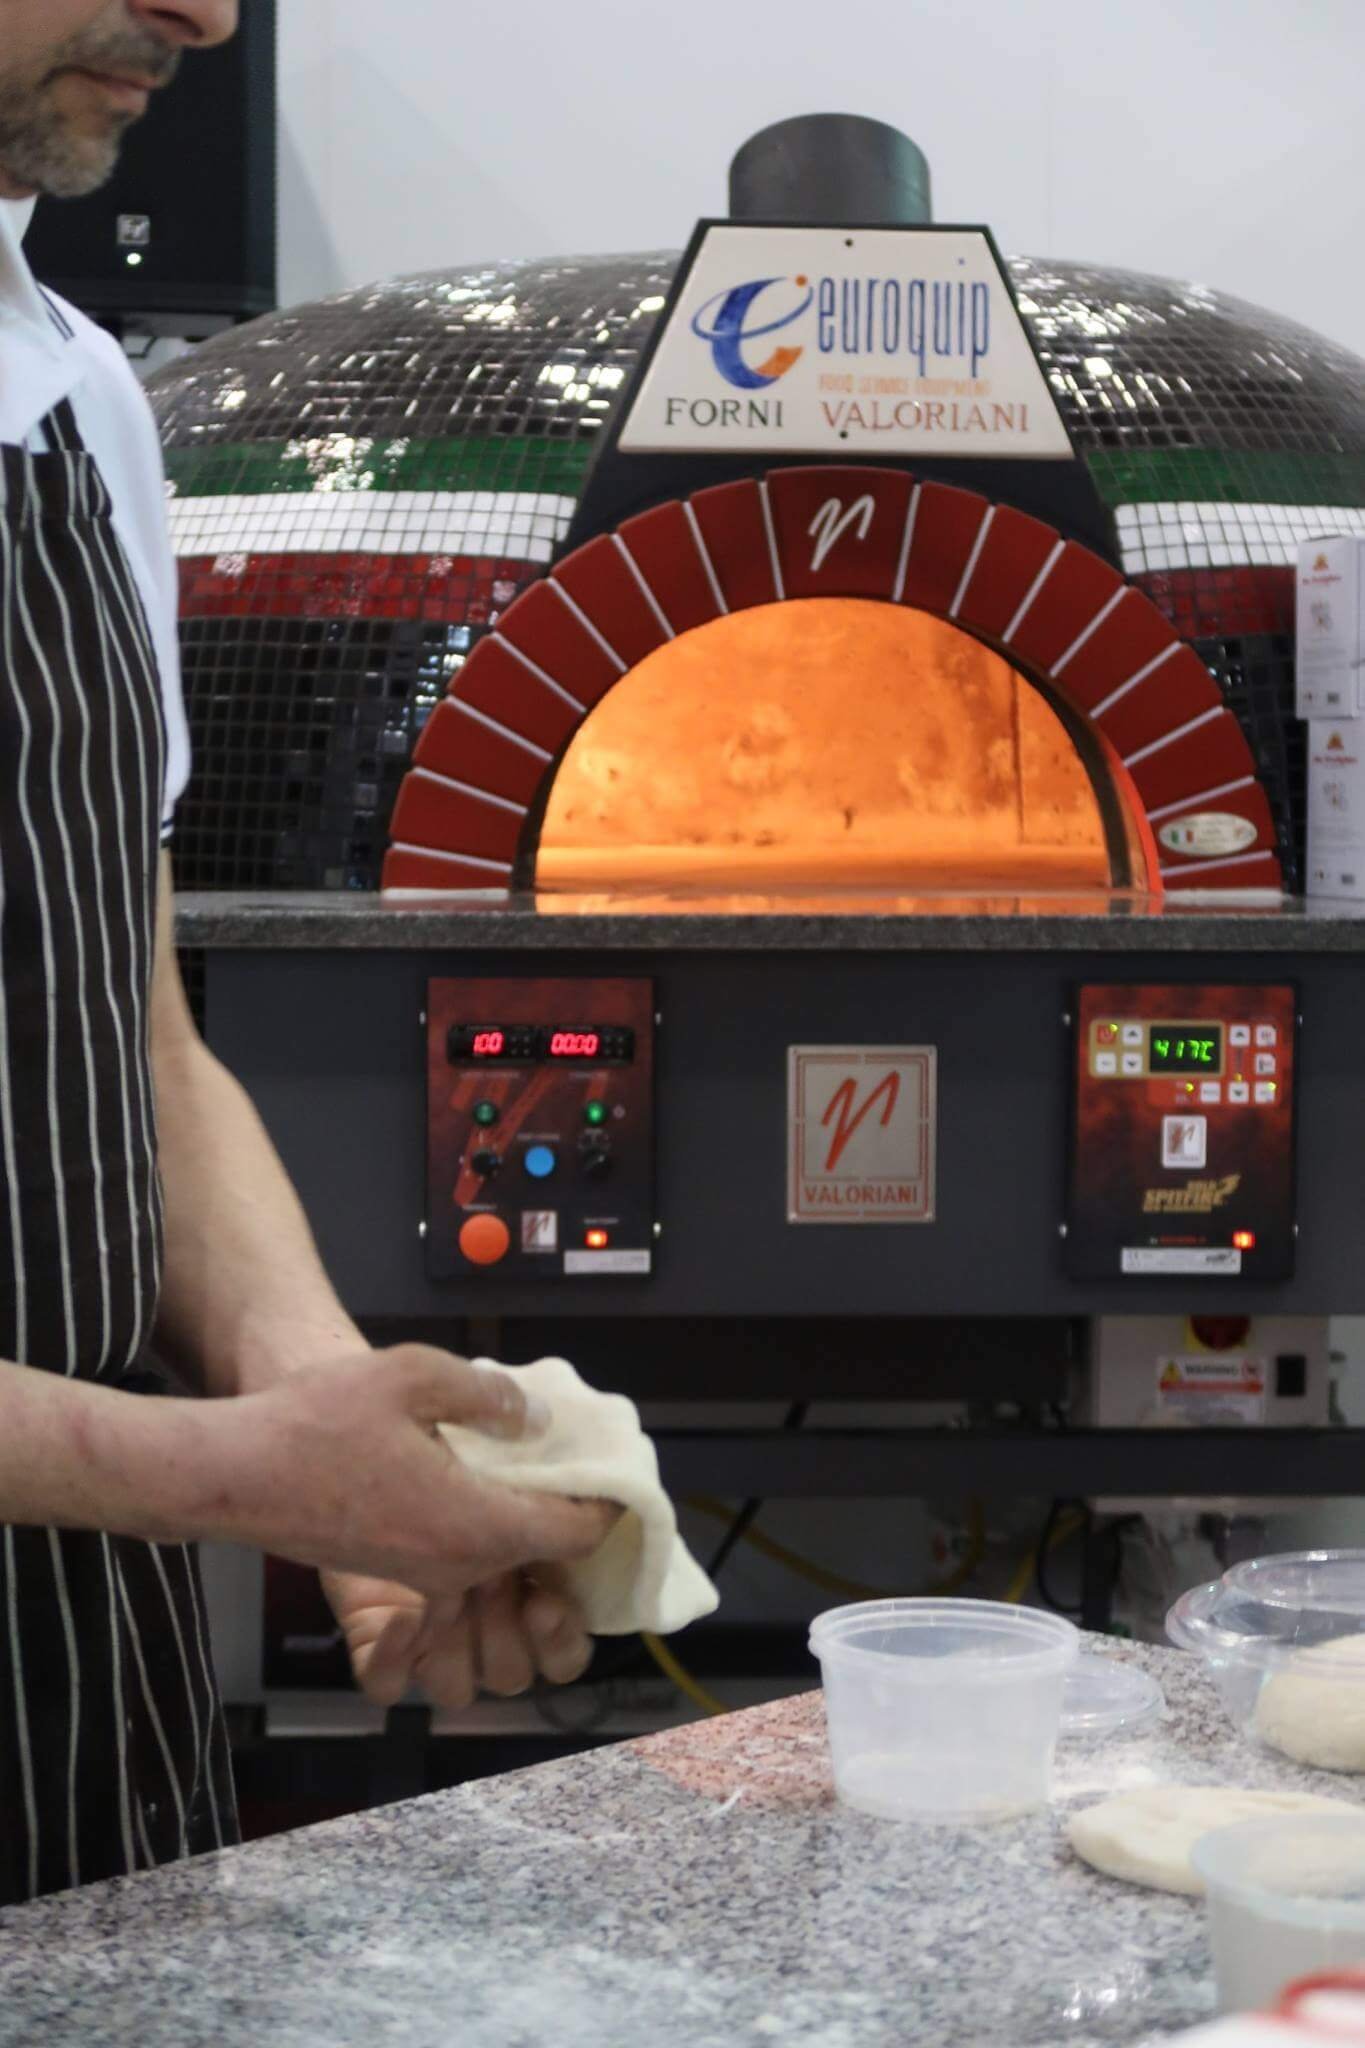 Gaspizzaofen Valoriani Rotativo: rotierender Pizzaofen, rund, 100cm Durchmesser, für Gastro